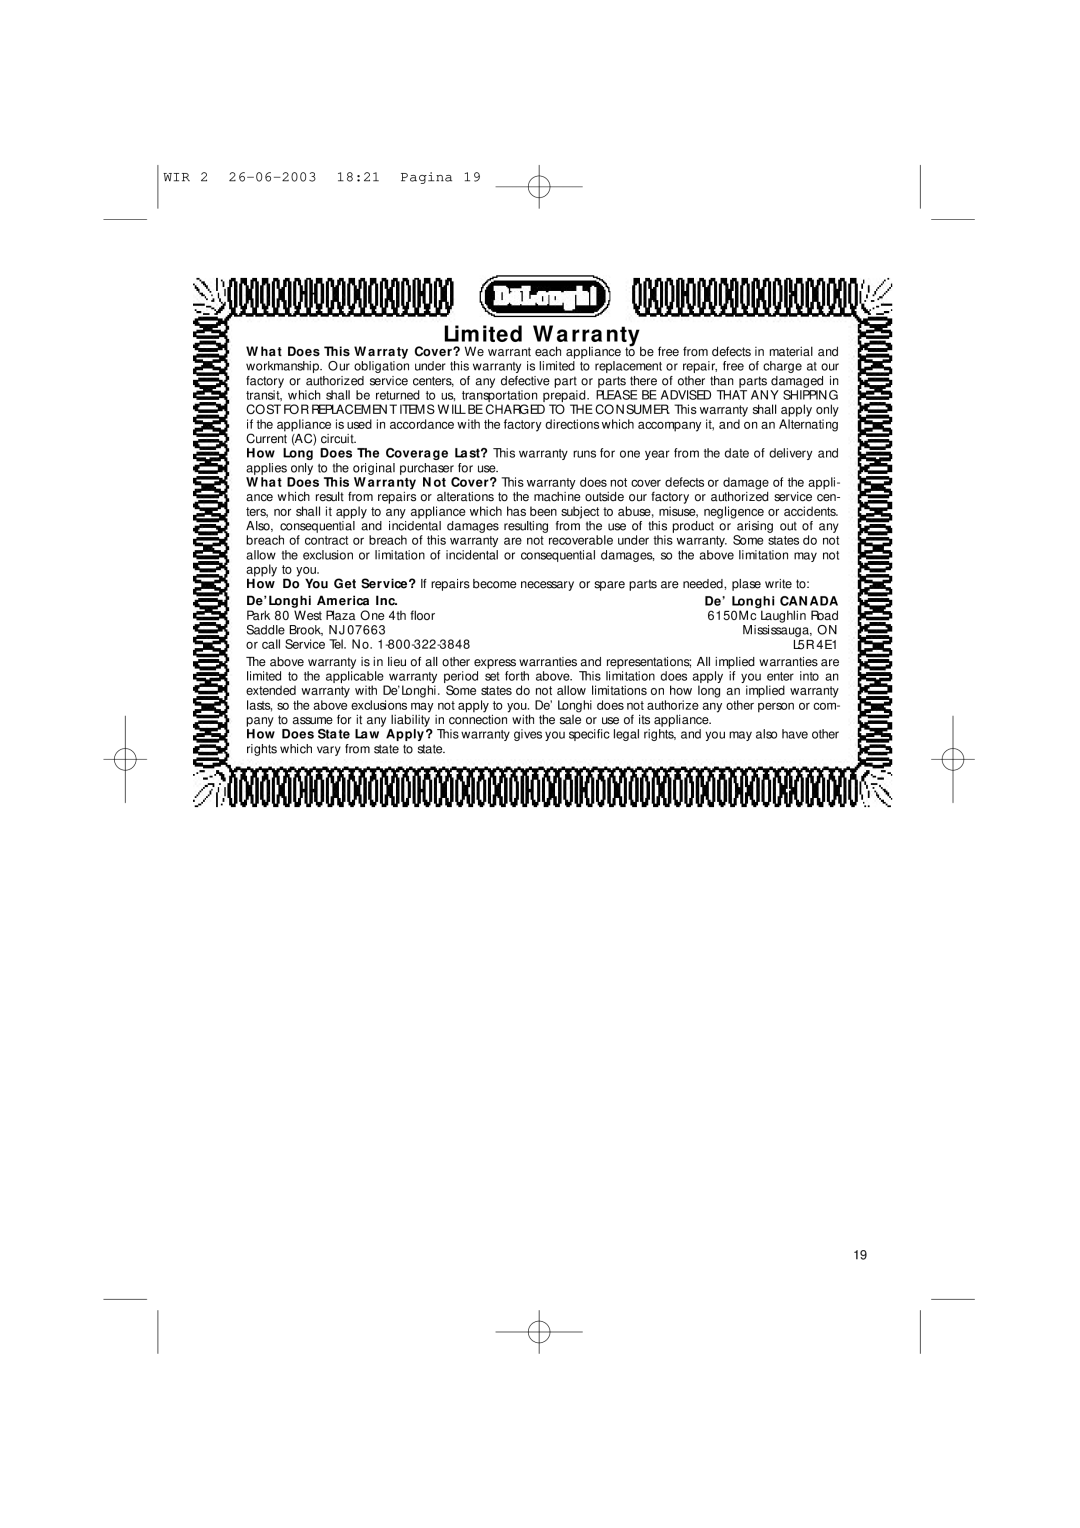 DeLonghi WIR2, WIR1 manual Limited Warranty, WIR 2 26-06-2003 1821 Pagina, De’Longhi America Inc, De’ Longhi CANADA 